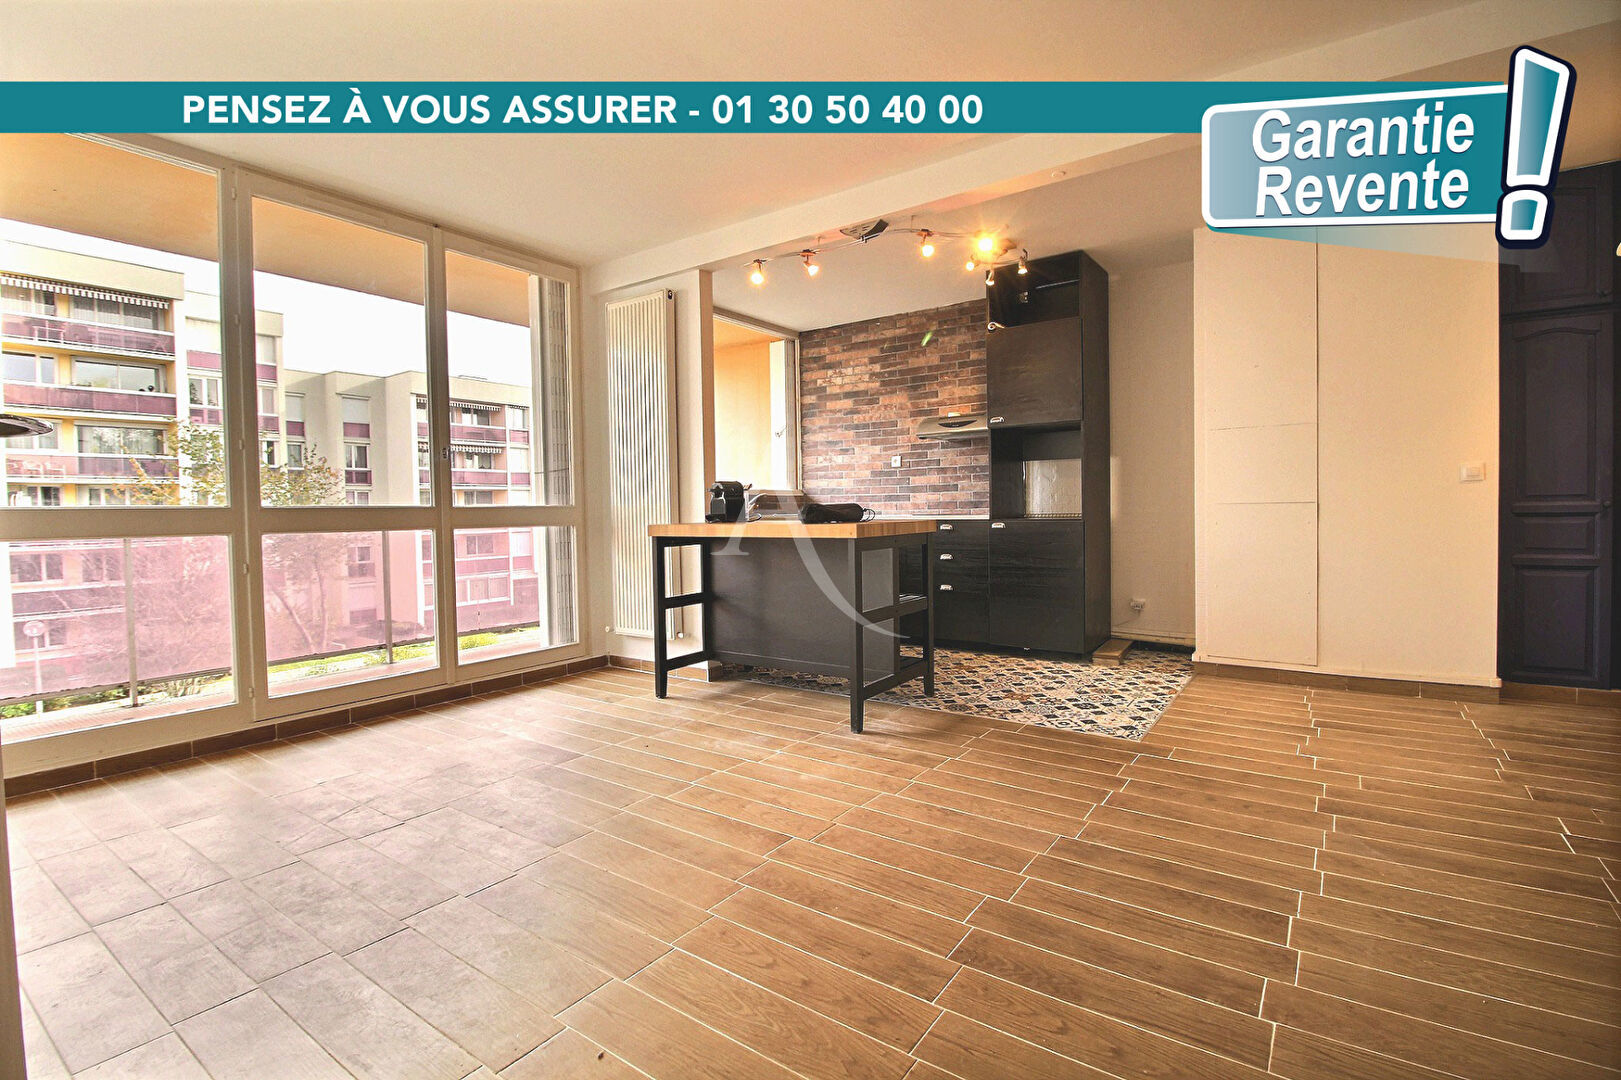 Appartement 2 pièces 50 m² elancourt